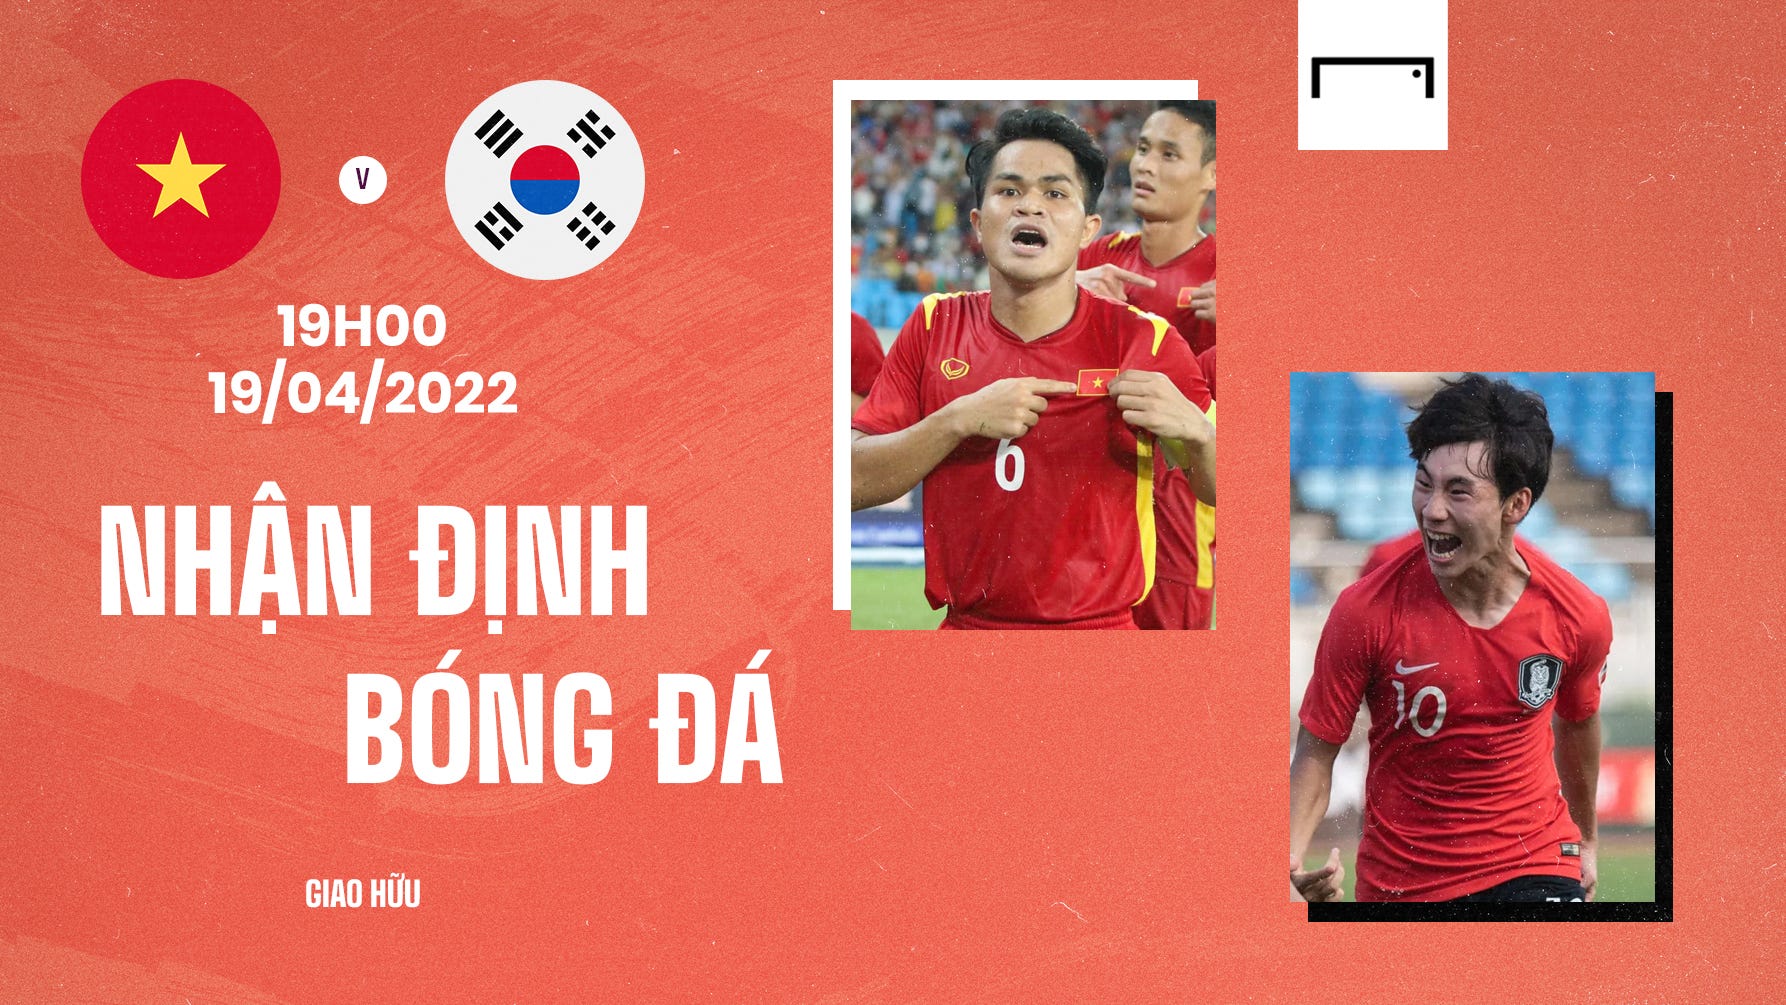 U23 Vietnam U20 South Korea 1942022 